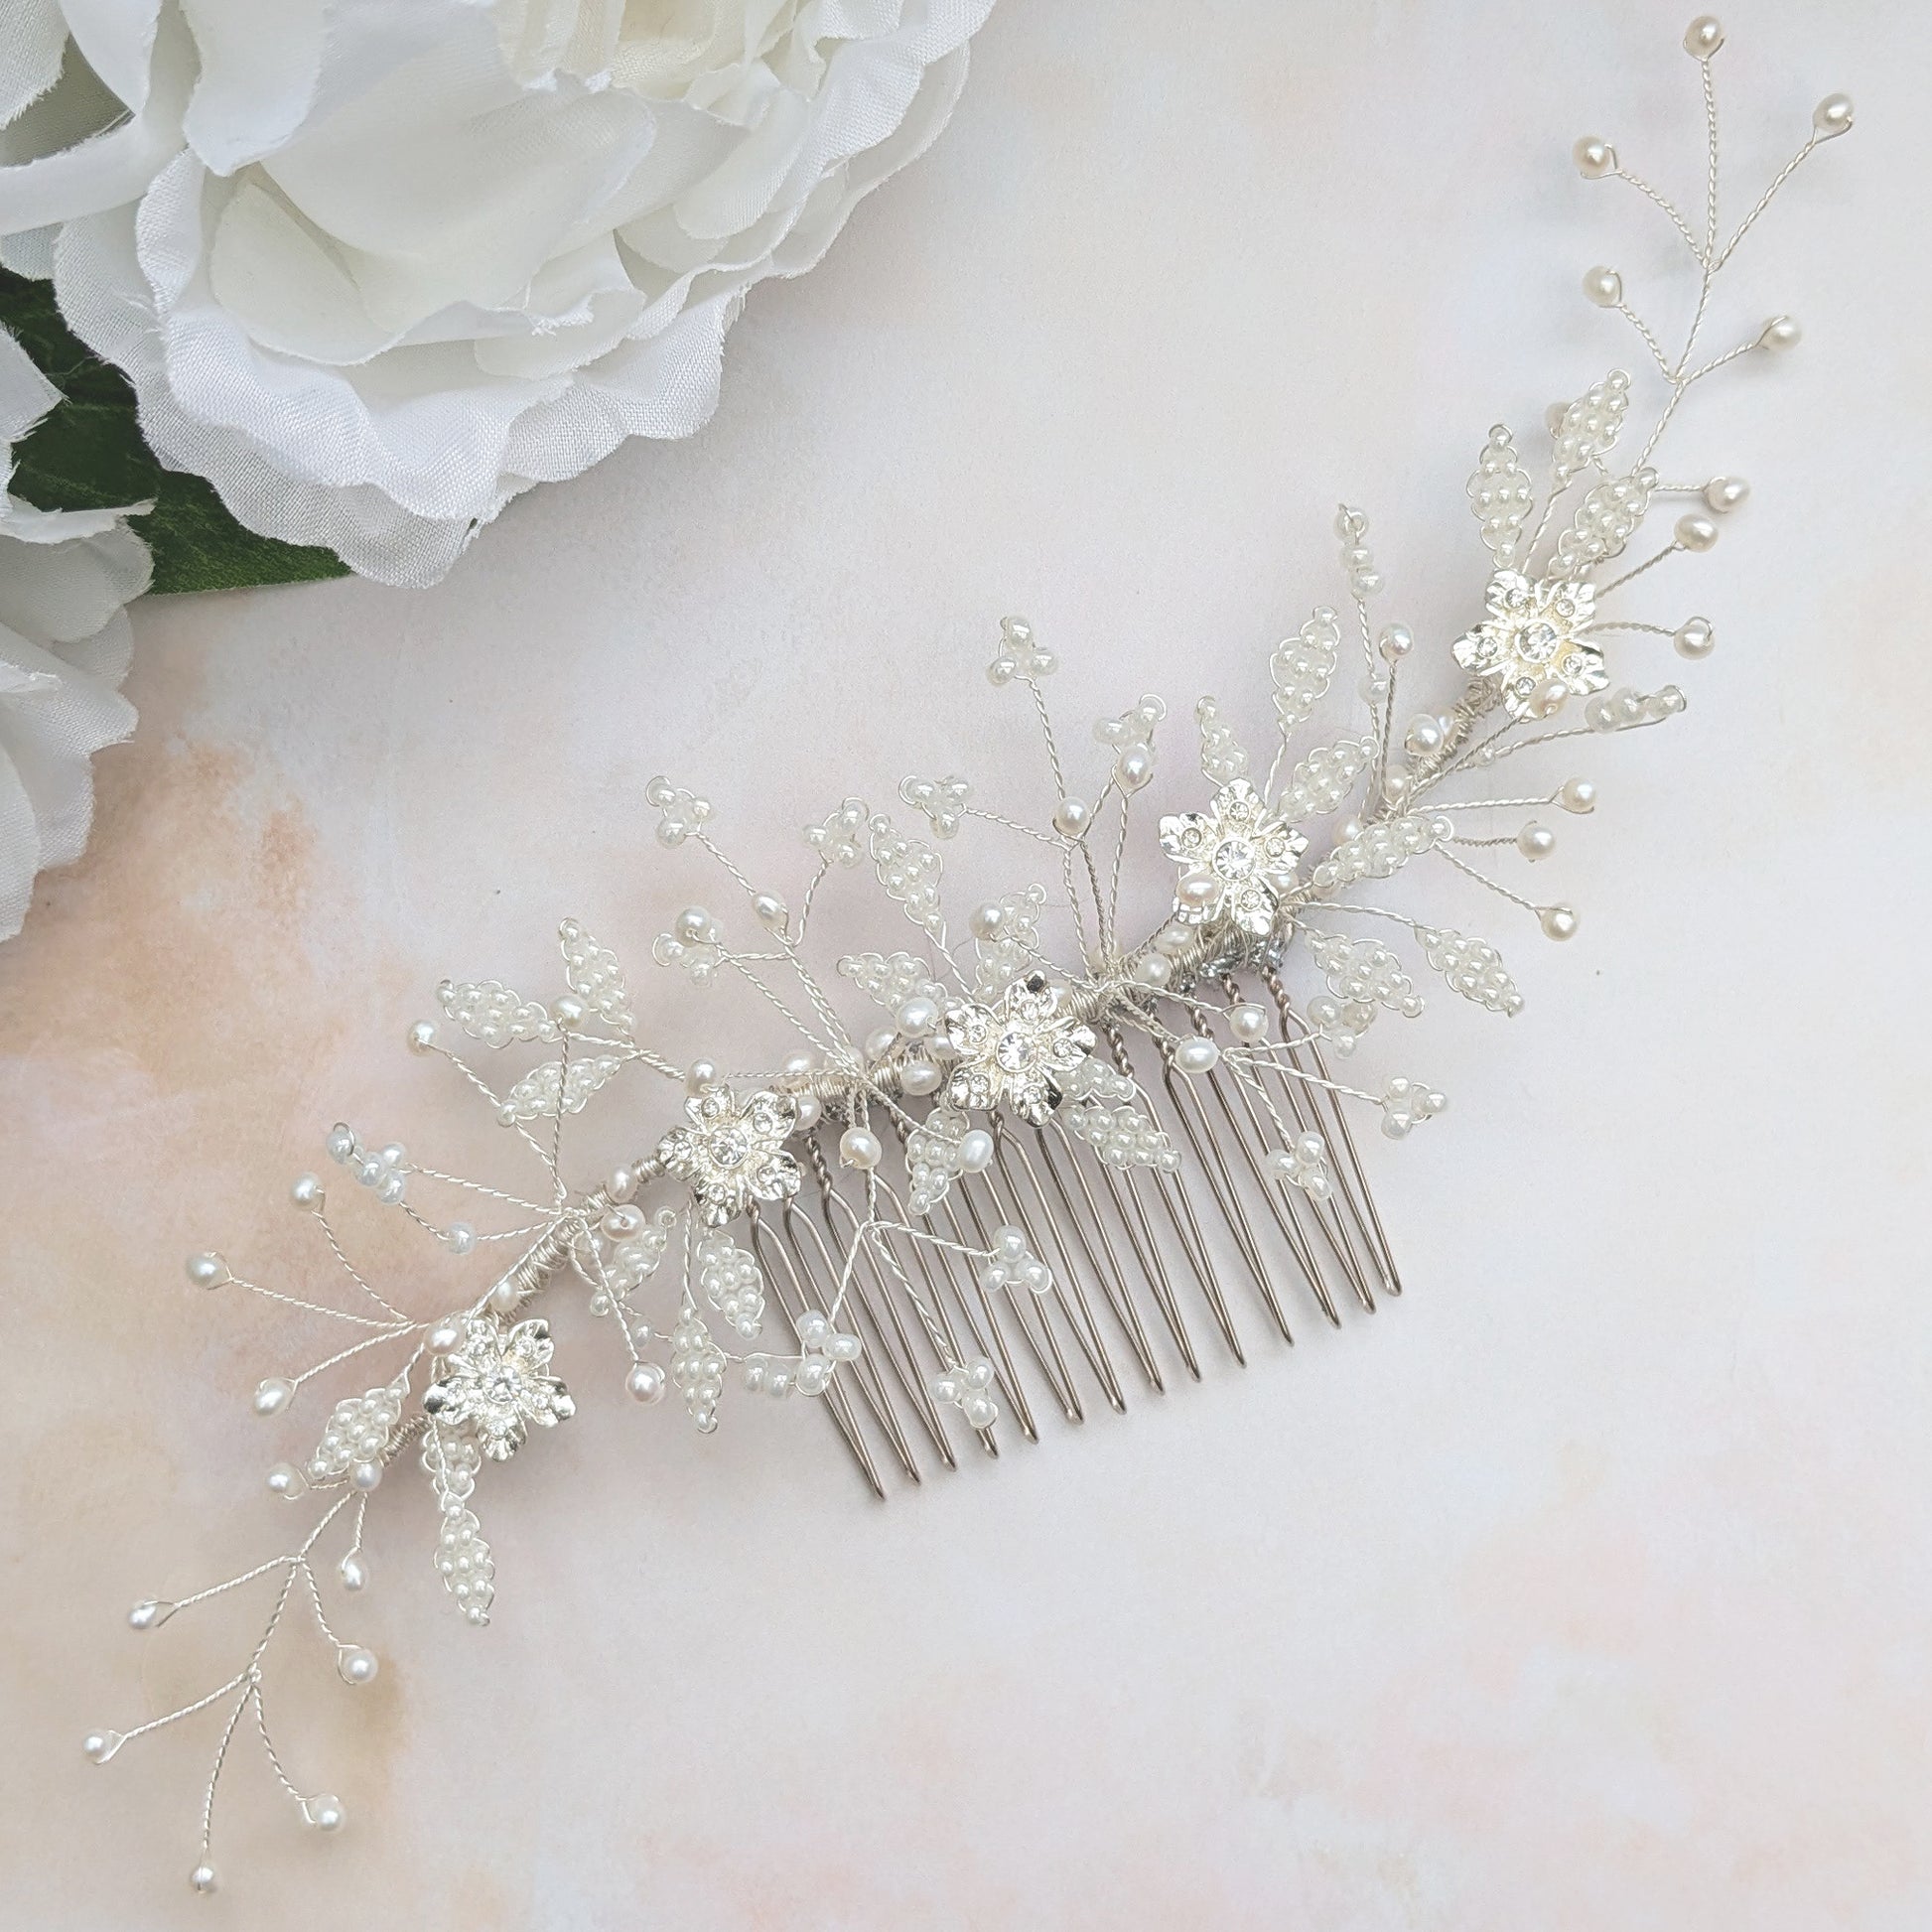 Modern floral bridal headpiece for weddings - Susie Warner